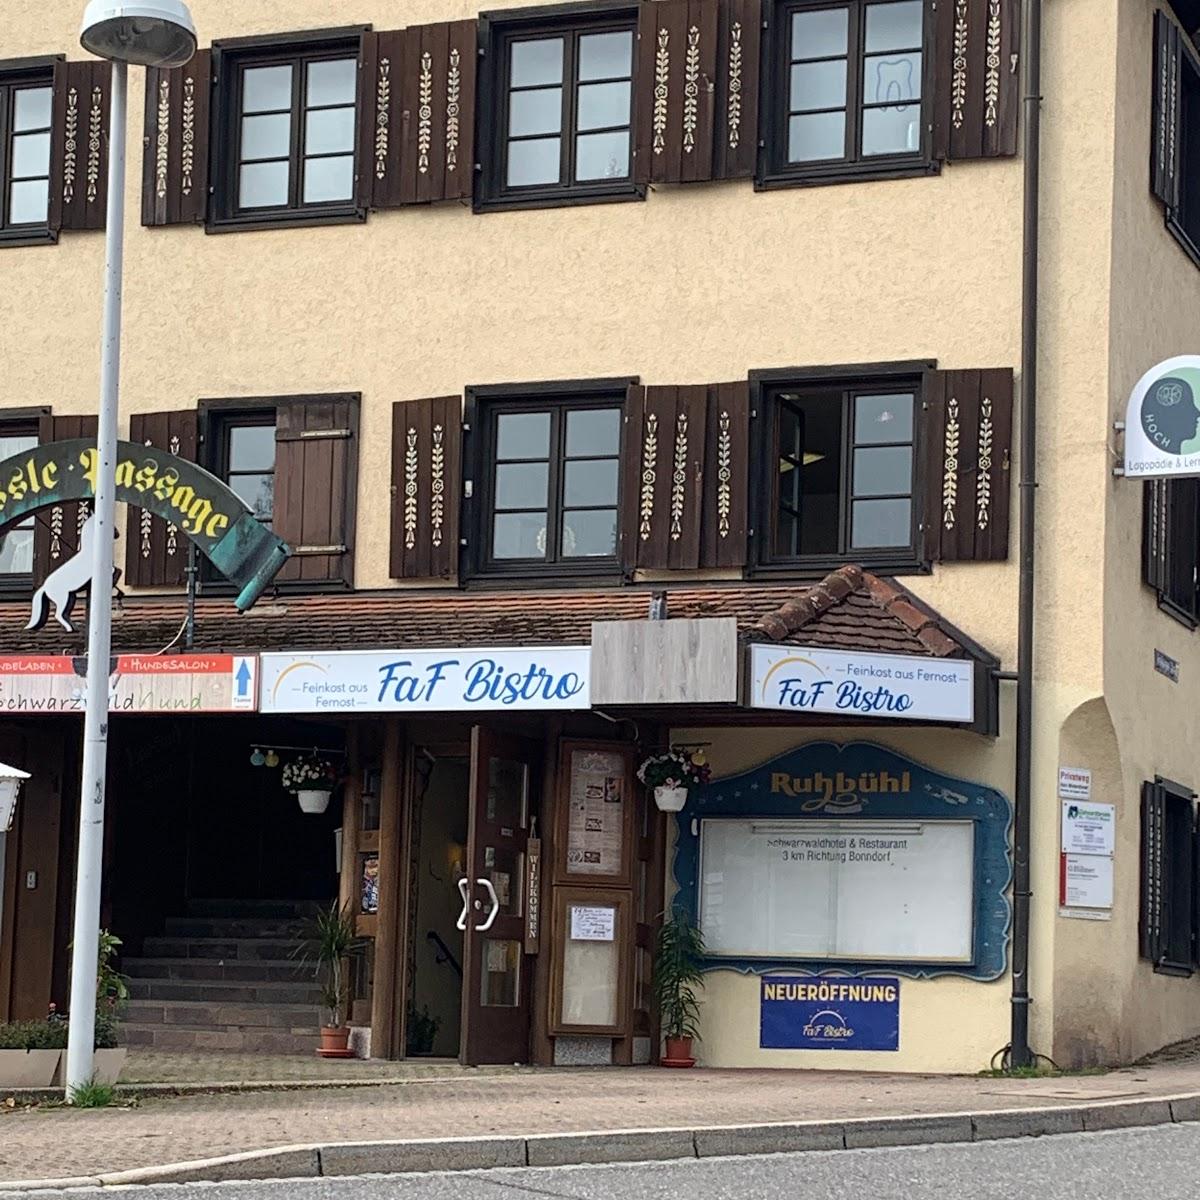 Restaurant "FaF Bistro" in Lenzkirch